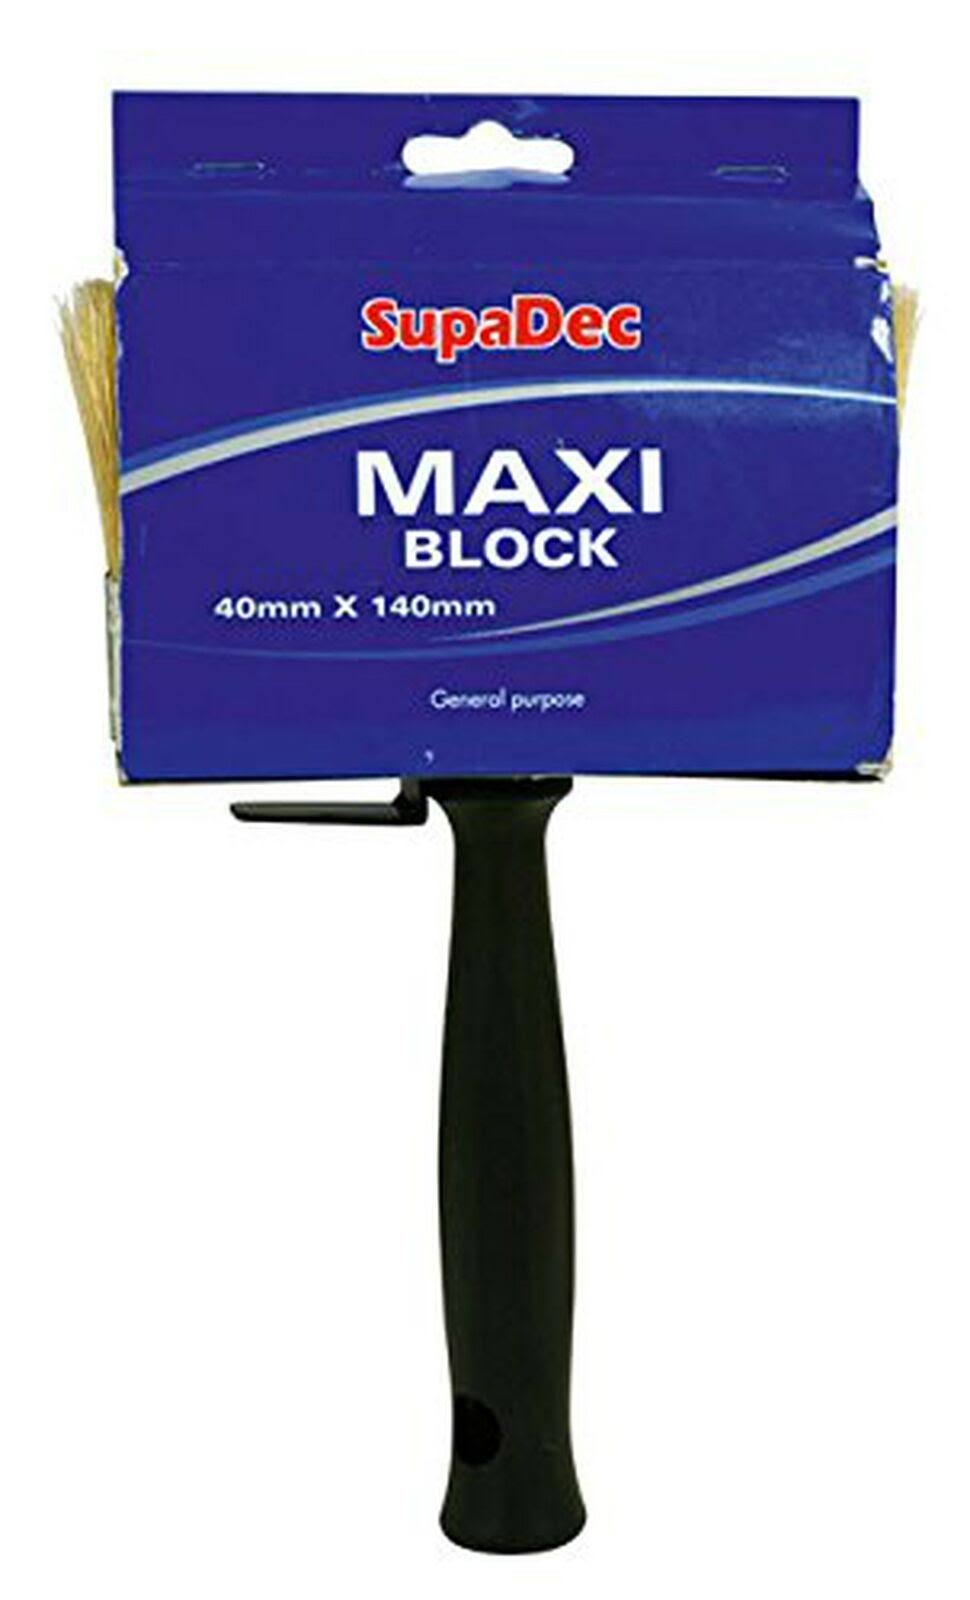 Supadec Maxi Block Brush - 40mm x 140mm